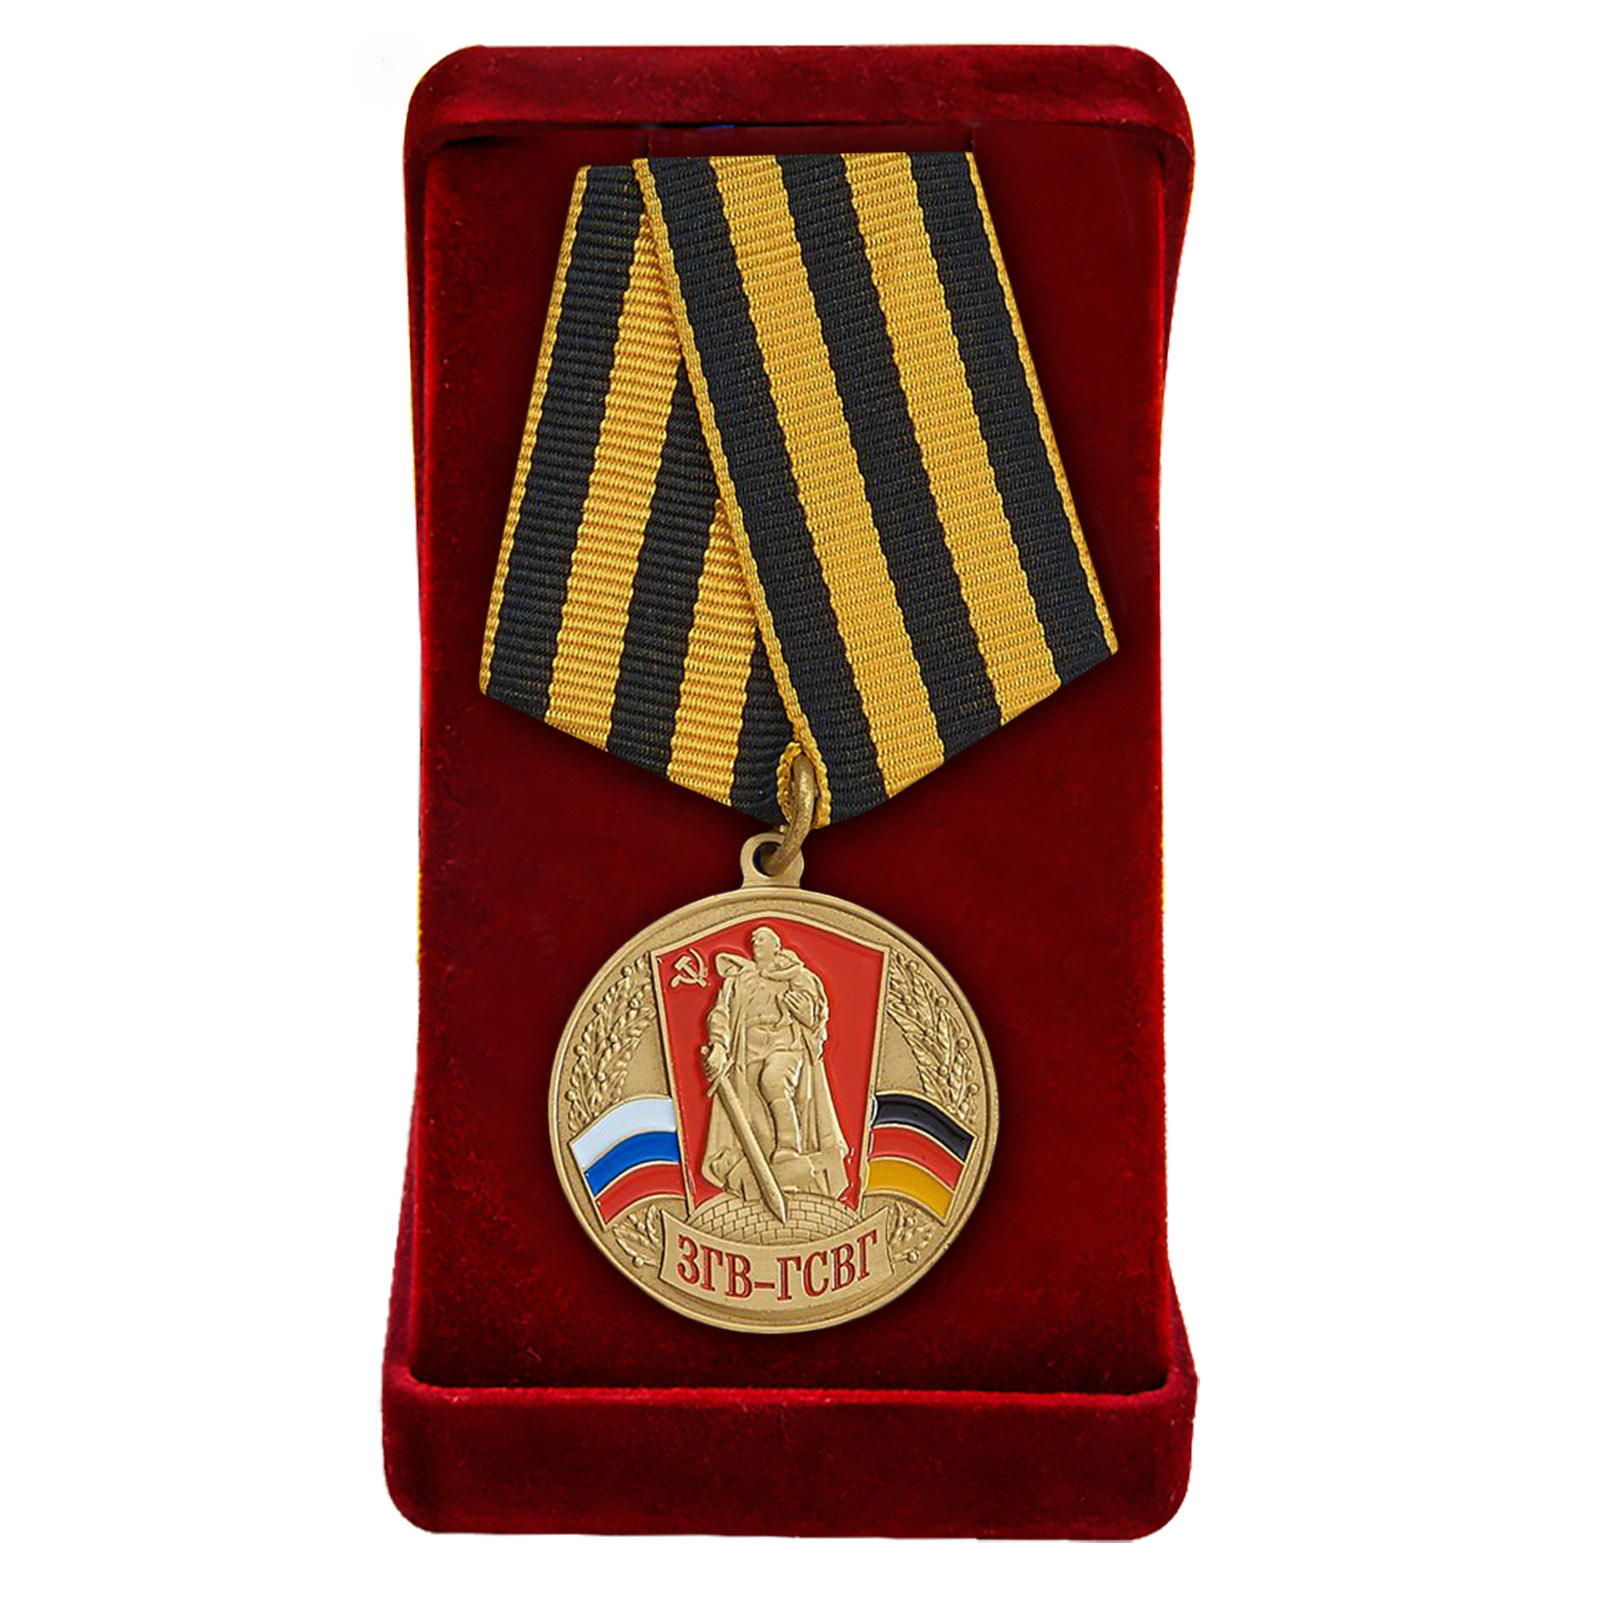 Медаль ЗГВ-ГСВГ в наградном футляре